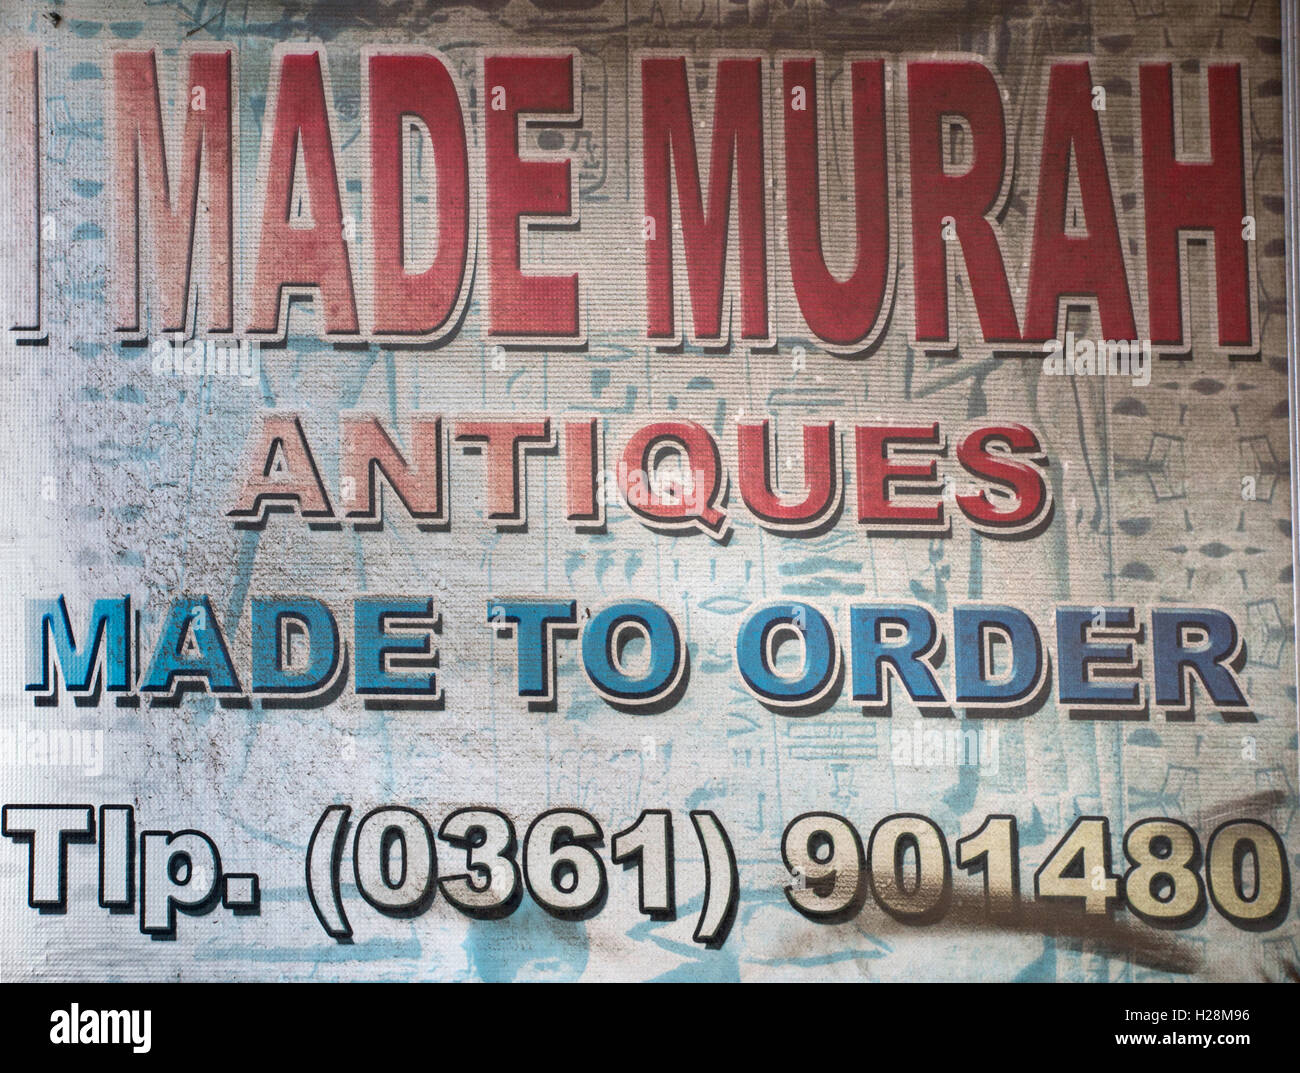 Indonesien, Bali, Ubud, Peliatan, JL. Raya Andong, Handwerk shop Zeichen, "Antiquitäten made to Order" Stockfoto